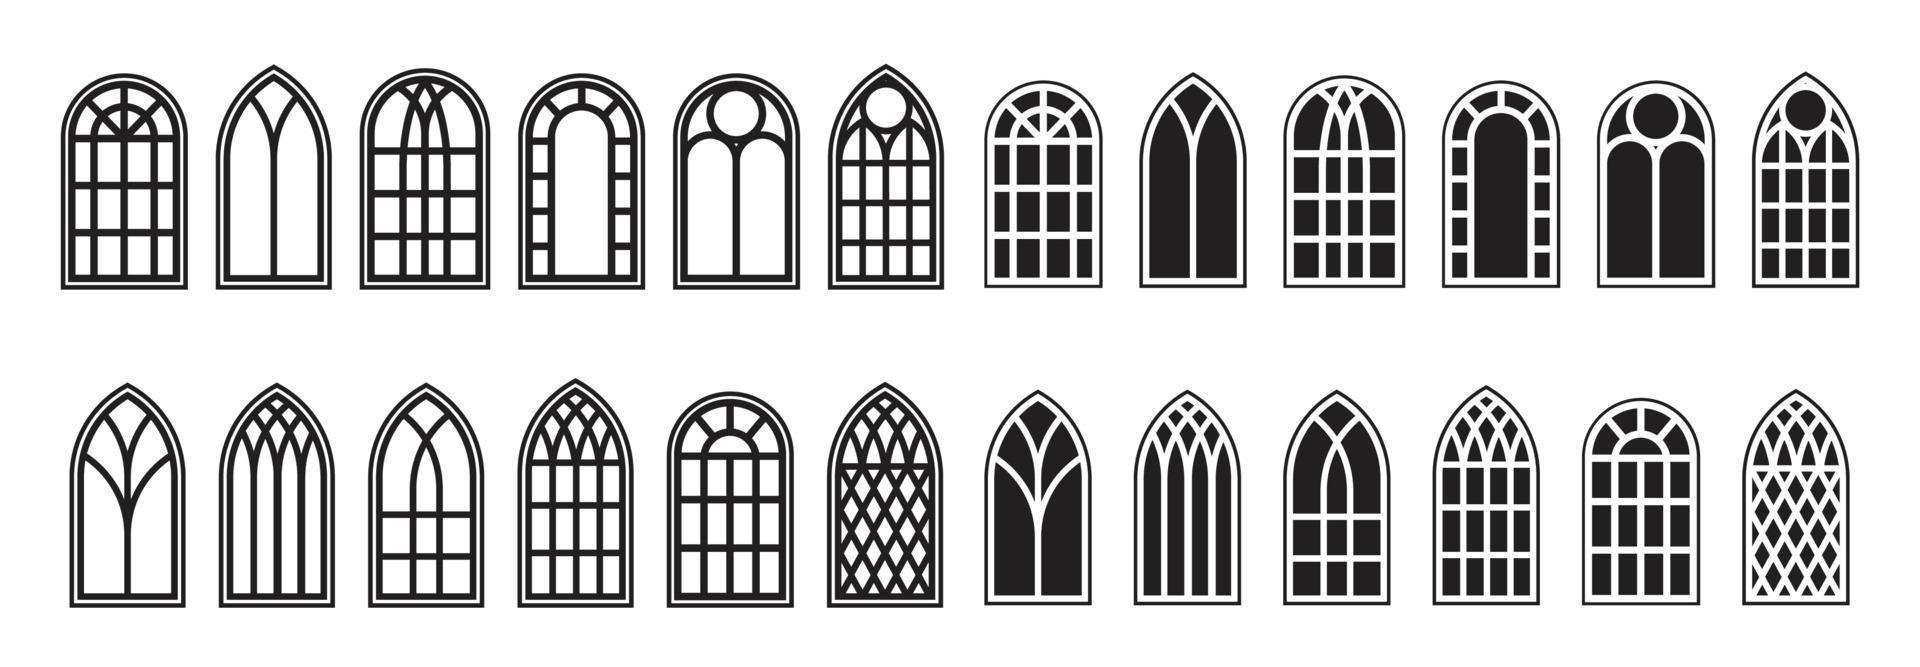 gotiska fönster konturer set. silhuett av vintage målat glas kyrka ramar. inslag av traditionell europeisk arkitektur. vektor illustration